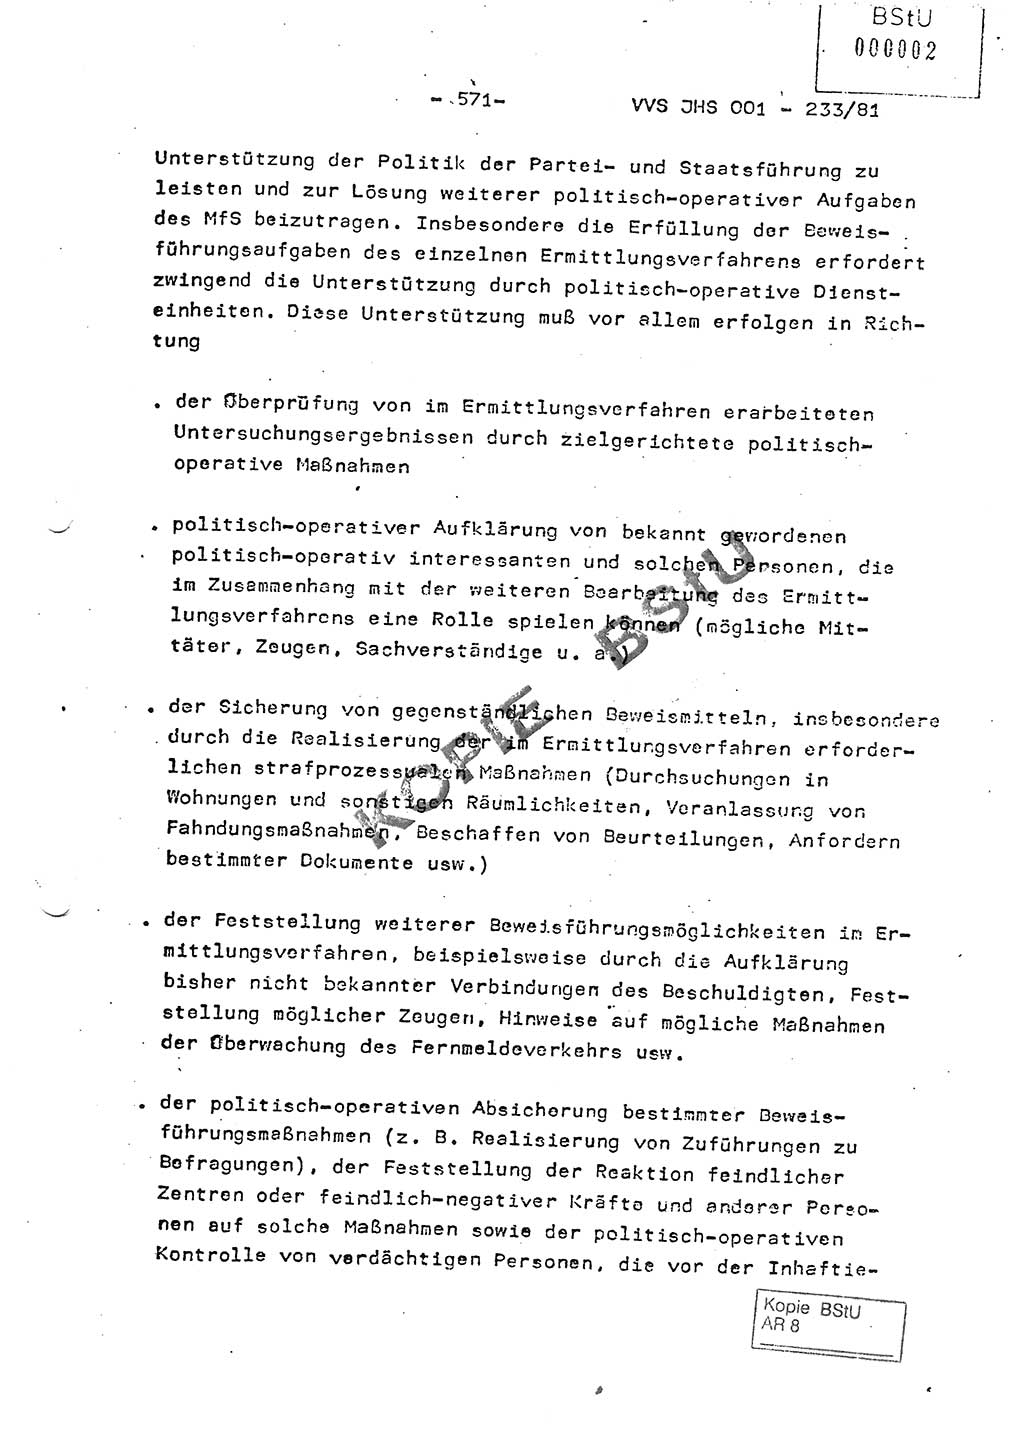 Dissertation Oberstleutnant Horst Zank (JHS), Oberstleutnant Dr. Karl-Heinz Knoblauch (JHS), Oberstleutnant Gustav-Adolf Kowalewski (HA Ⅸ), Oberstleutnant Wolfgang Plötner (HA Ⅸ), Ministerium für Staatssicherheit (MfS) [Deutsche Demokratische Republik (DDR)], Juristische Hochschule (JHS), Vertrauliche Verschlußsache (VVS) o001-233/81, Potsdam 1981, Blatt 571 (Diss. MfS DDR JHS VVS o001-233/81 1981, Bl. 571)